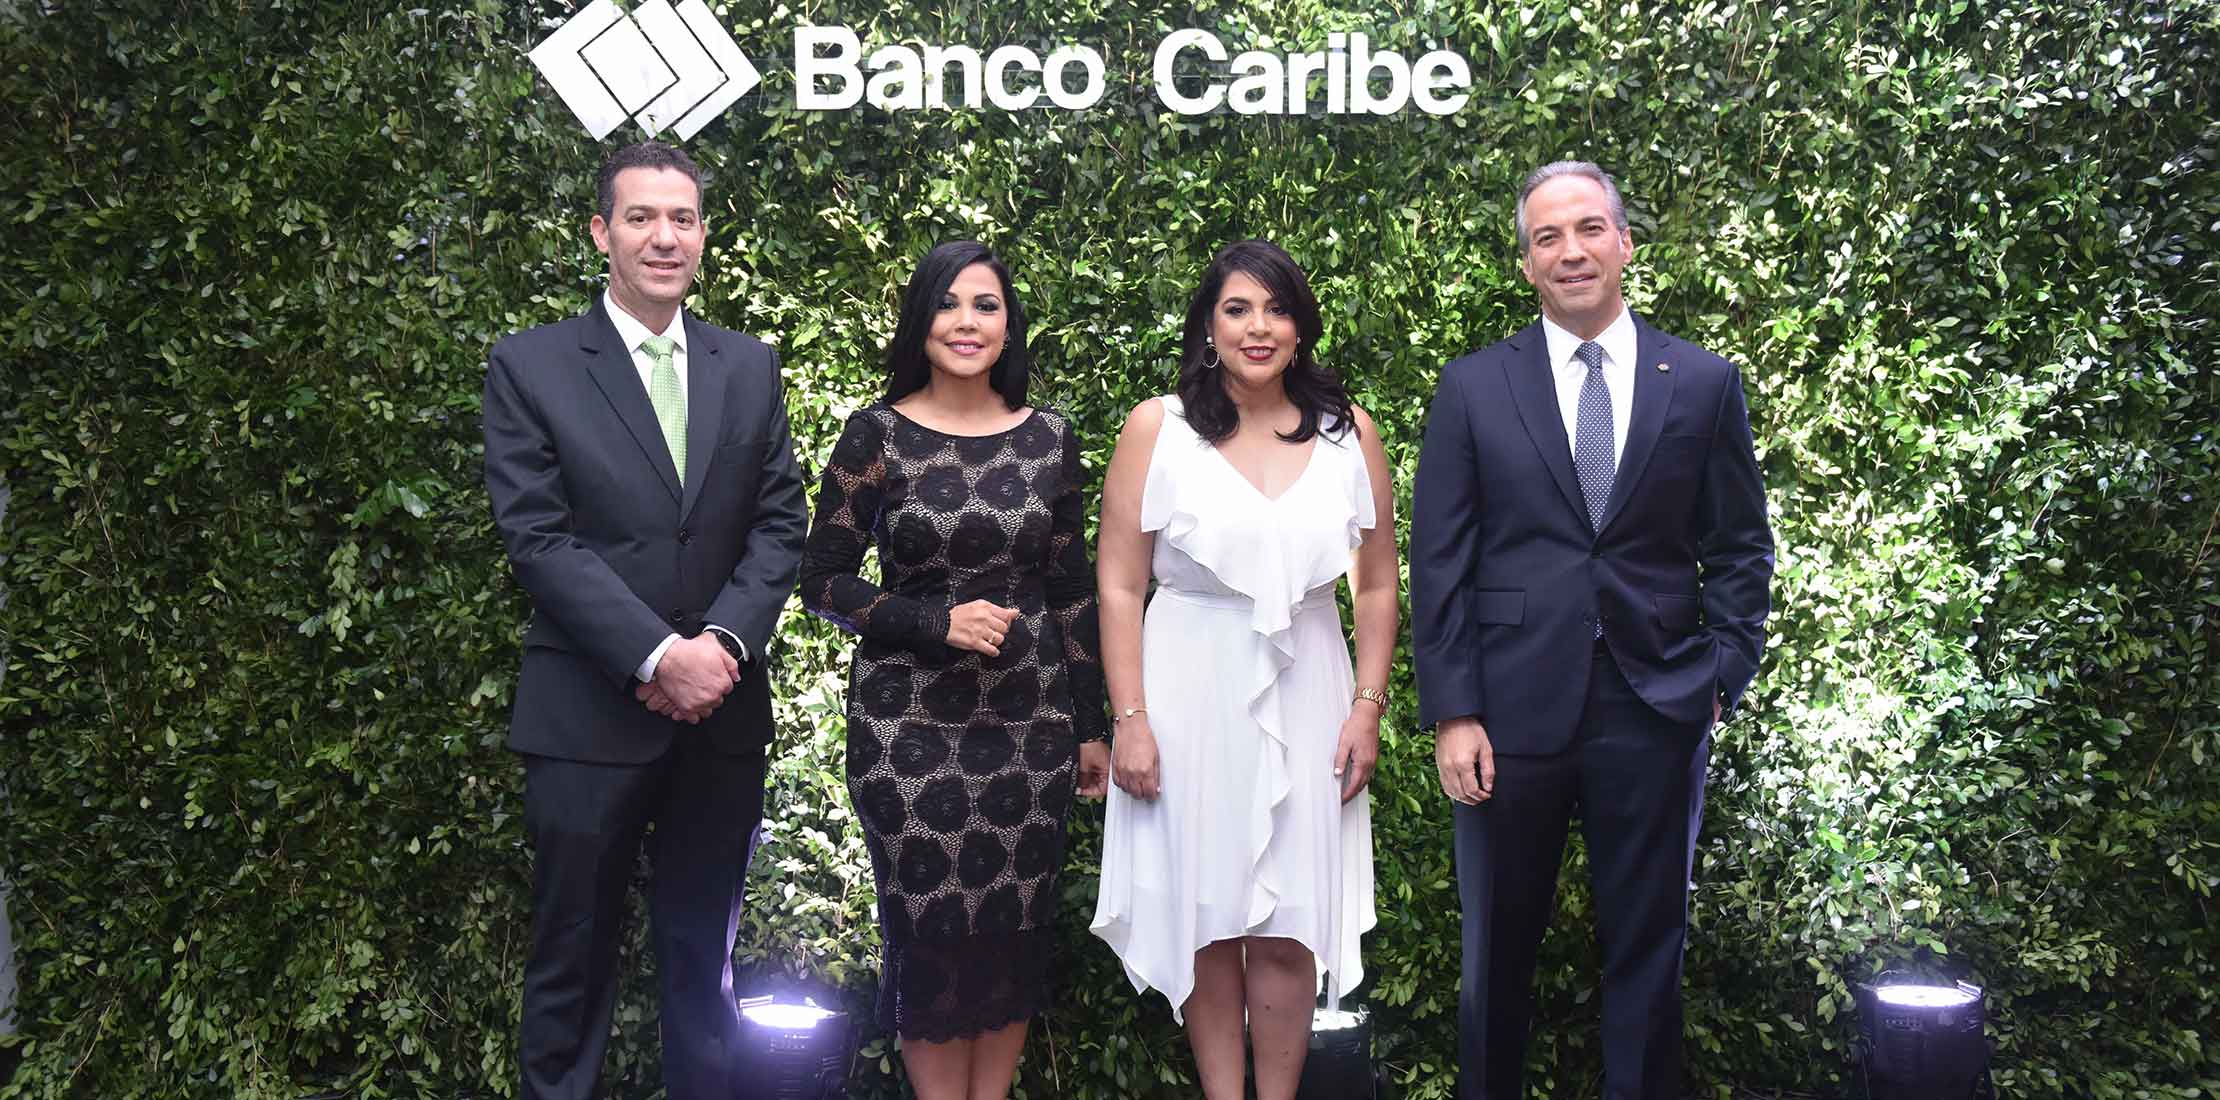 Clientes Elite de Banco Caribe disfrutaron de “Una noche en Sevilla”